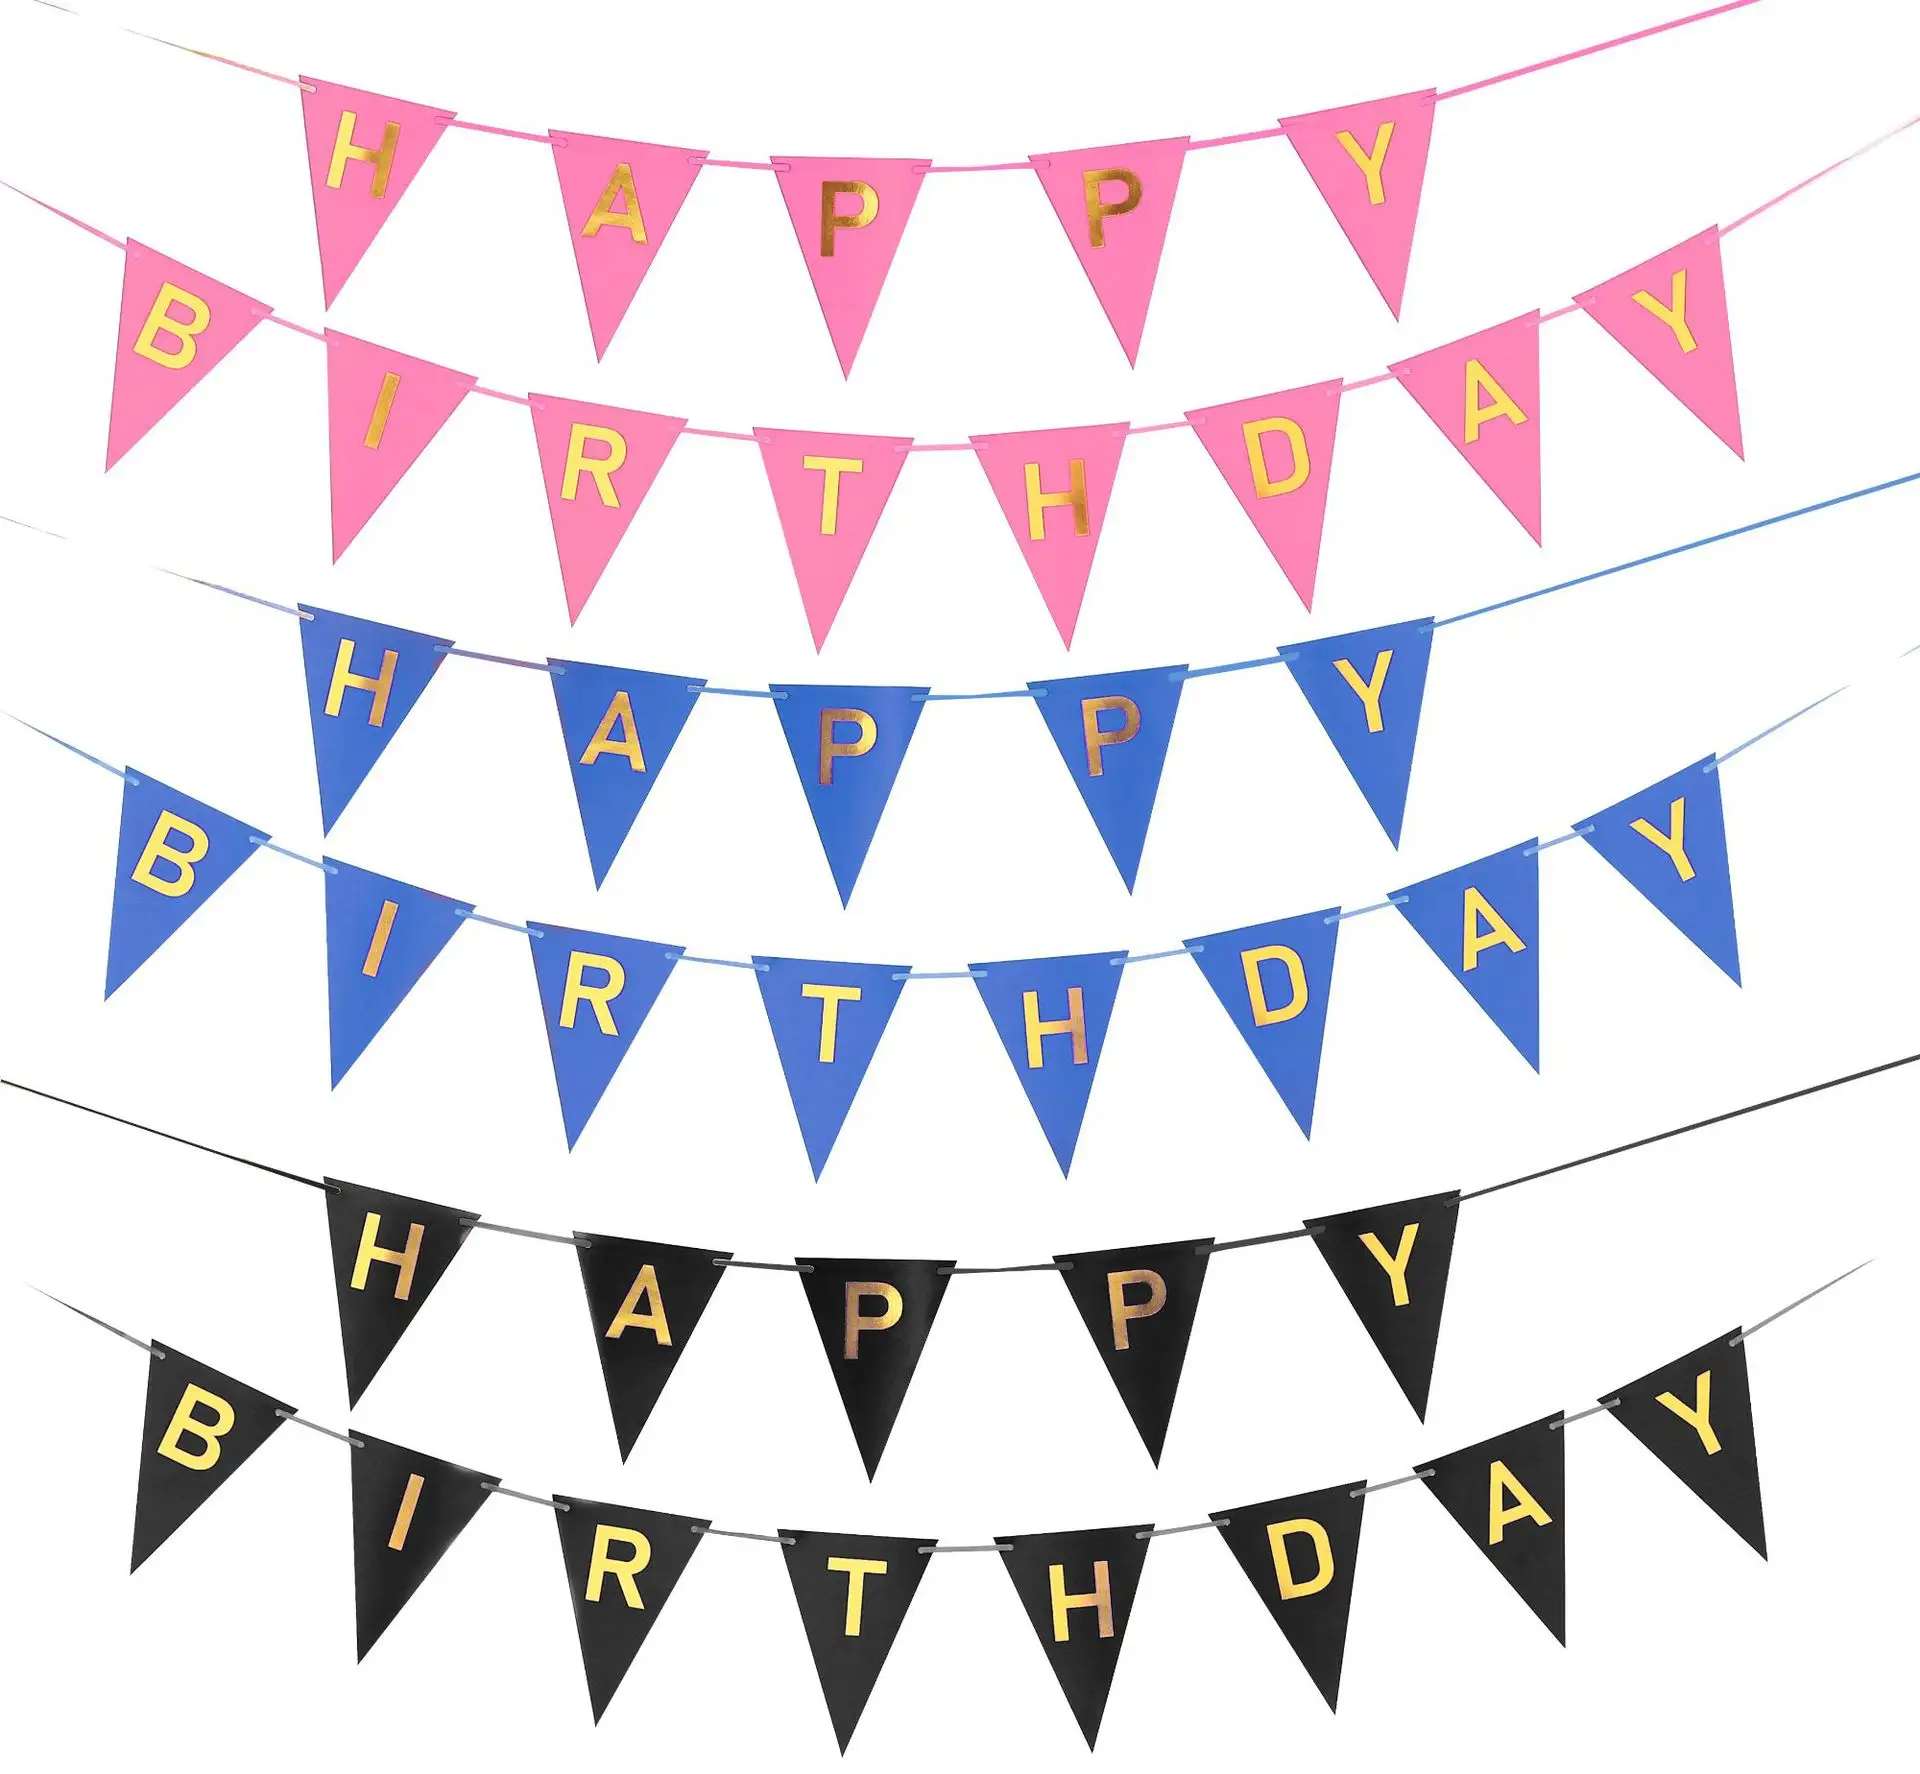 Bannière joyeux anniversaire 13x18cm avec lettres dorées, banderole pour décorations de fête, drapeau en queue de poisson, signe d'anniversaire, fournitures de bannière